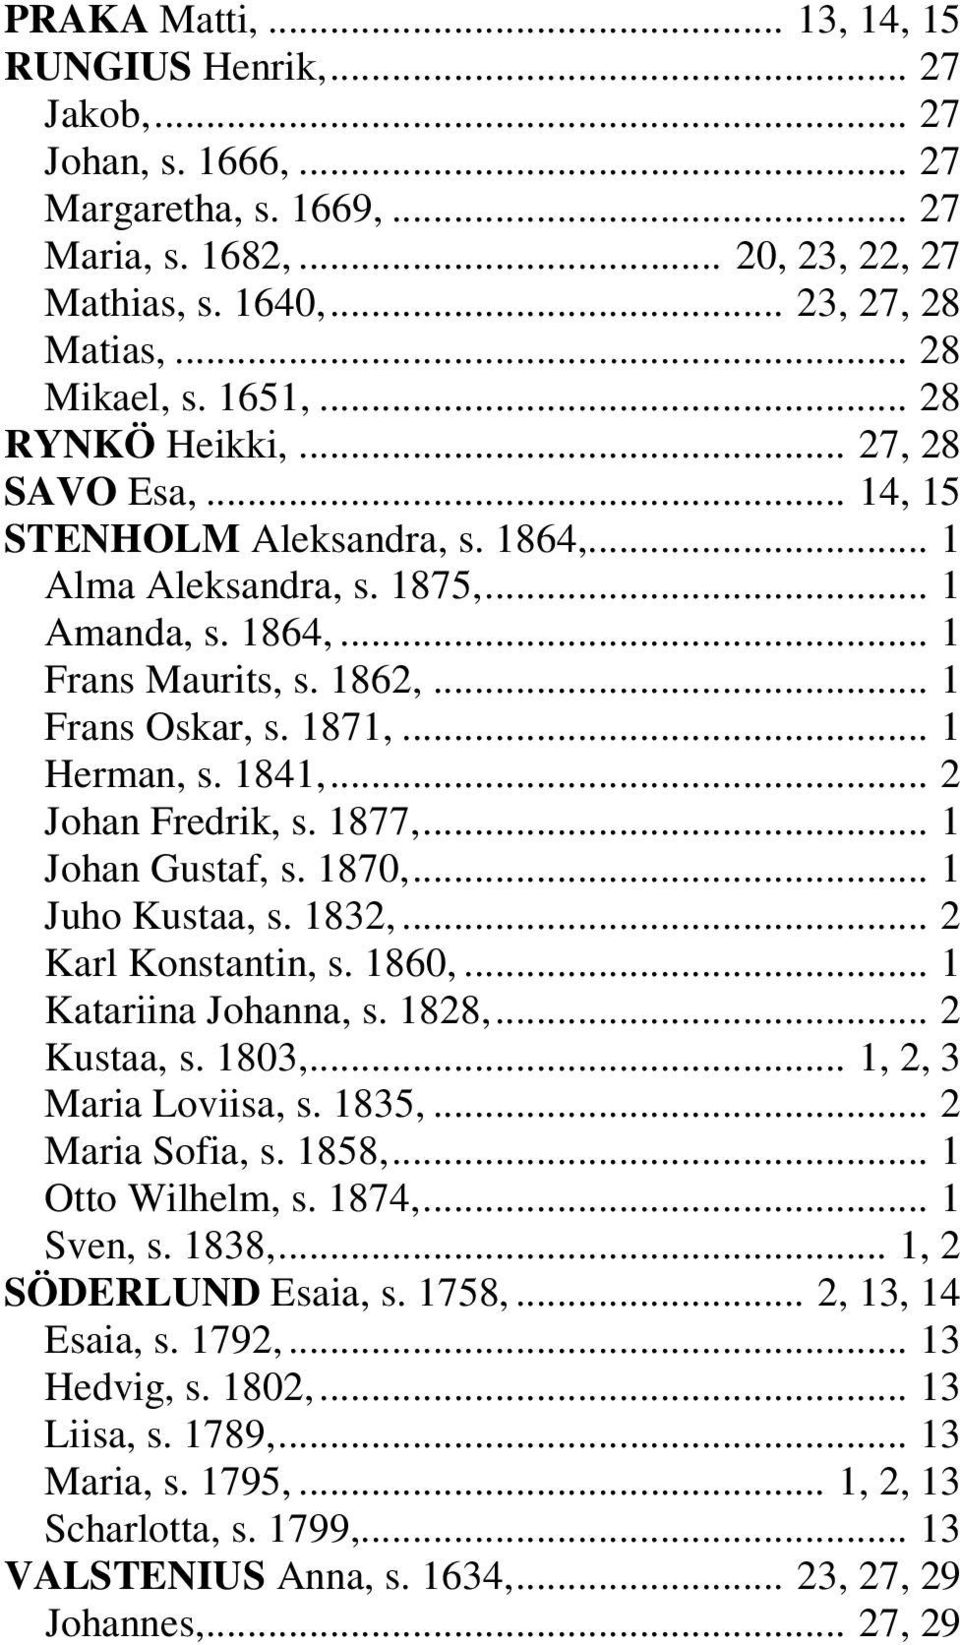 .. 1 Herman, s. 1841,... 2 Johan Fredrik, s. 1877,... 1 Johan Gustaf, s. 1870,... 1 Juho Kustaa, s. 1832,... 2 Karl Konstantin, s. 1860,... 1 Katariina Johanna, s. 1828,... 2 Kustaa, s. 1803,.